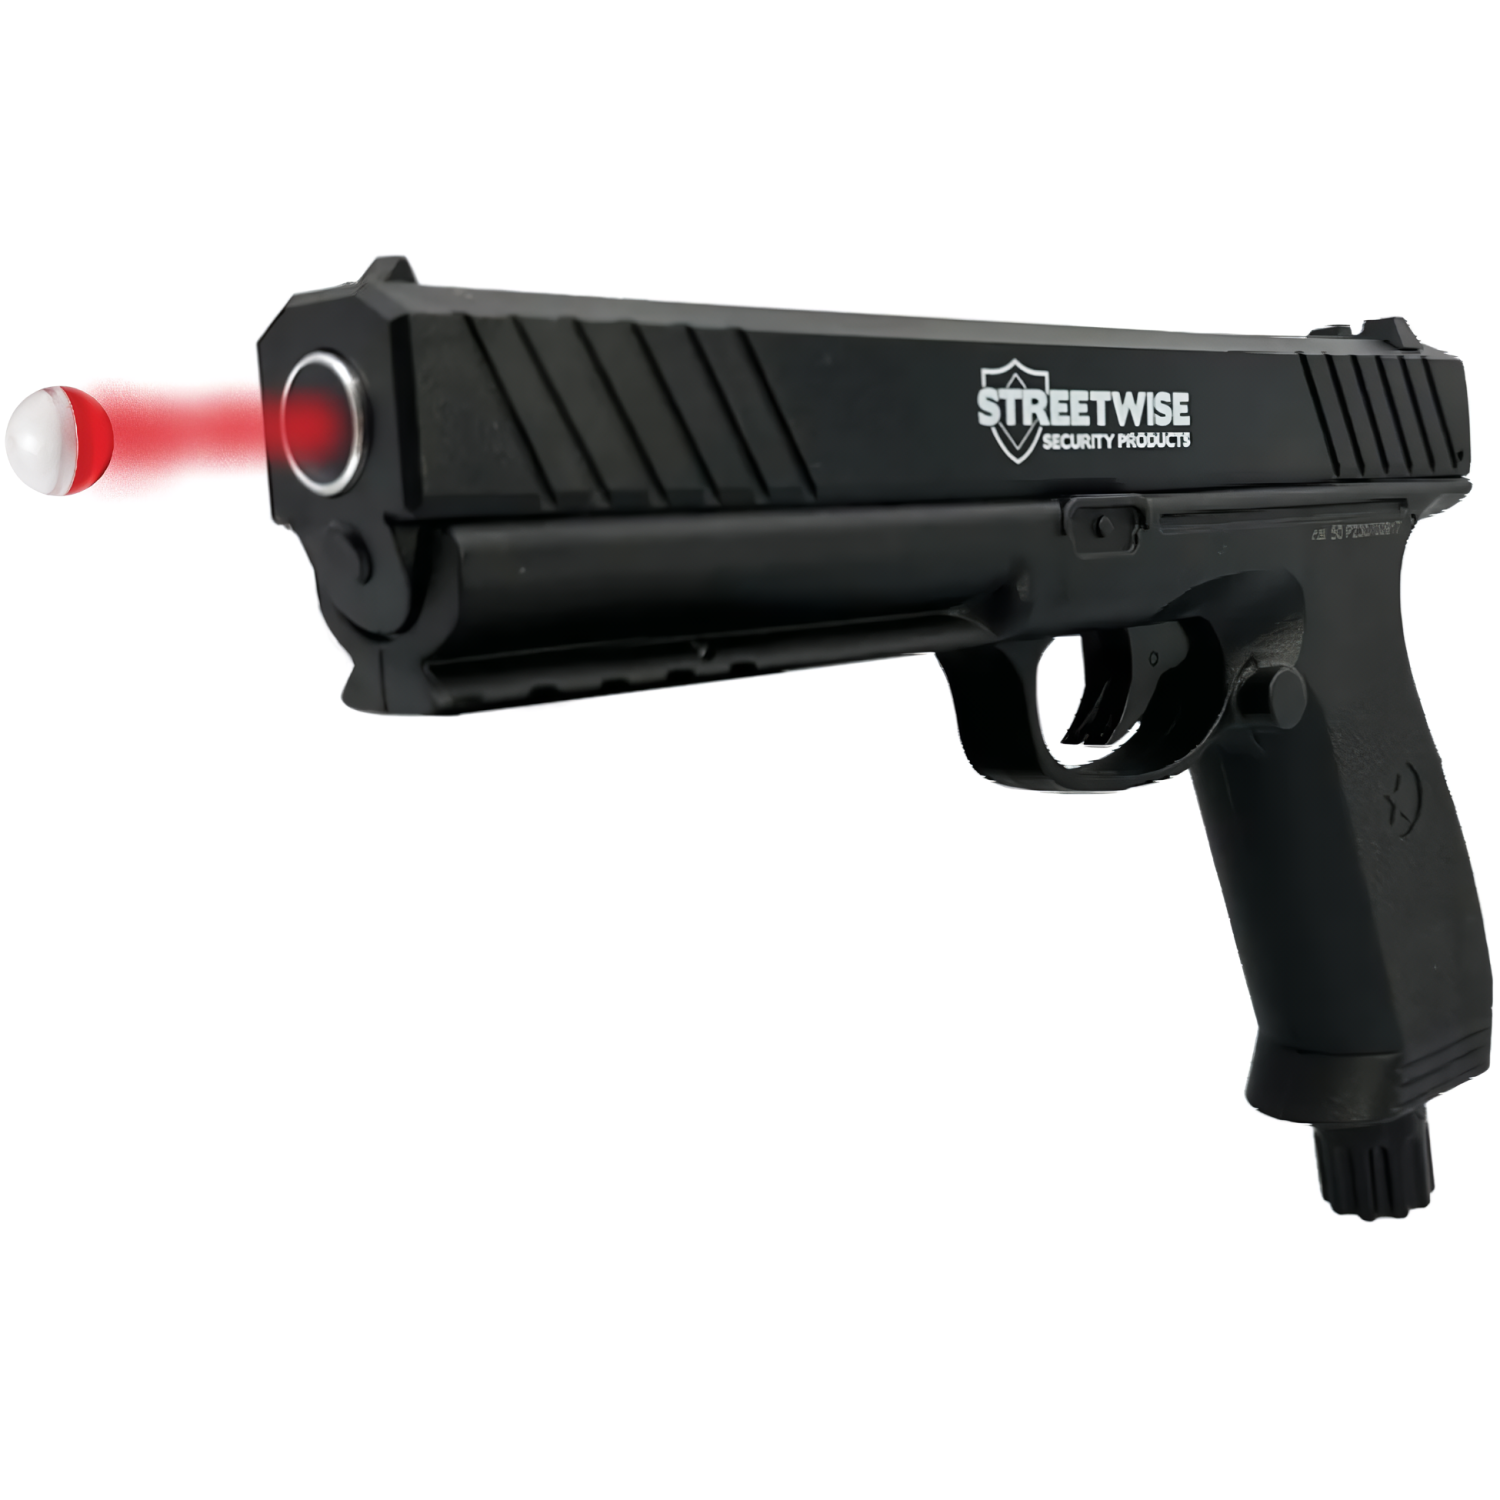 Streetwise The Heat Self-Defense Pepper Ball Launcher Gun